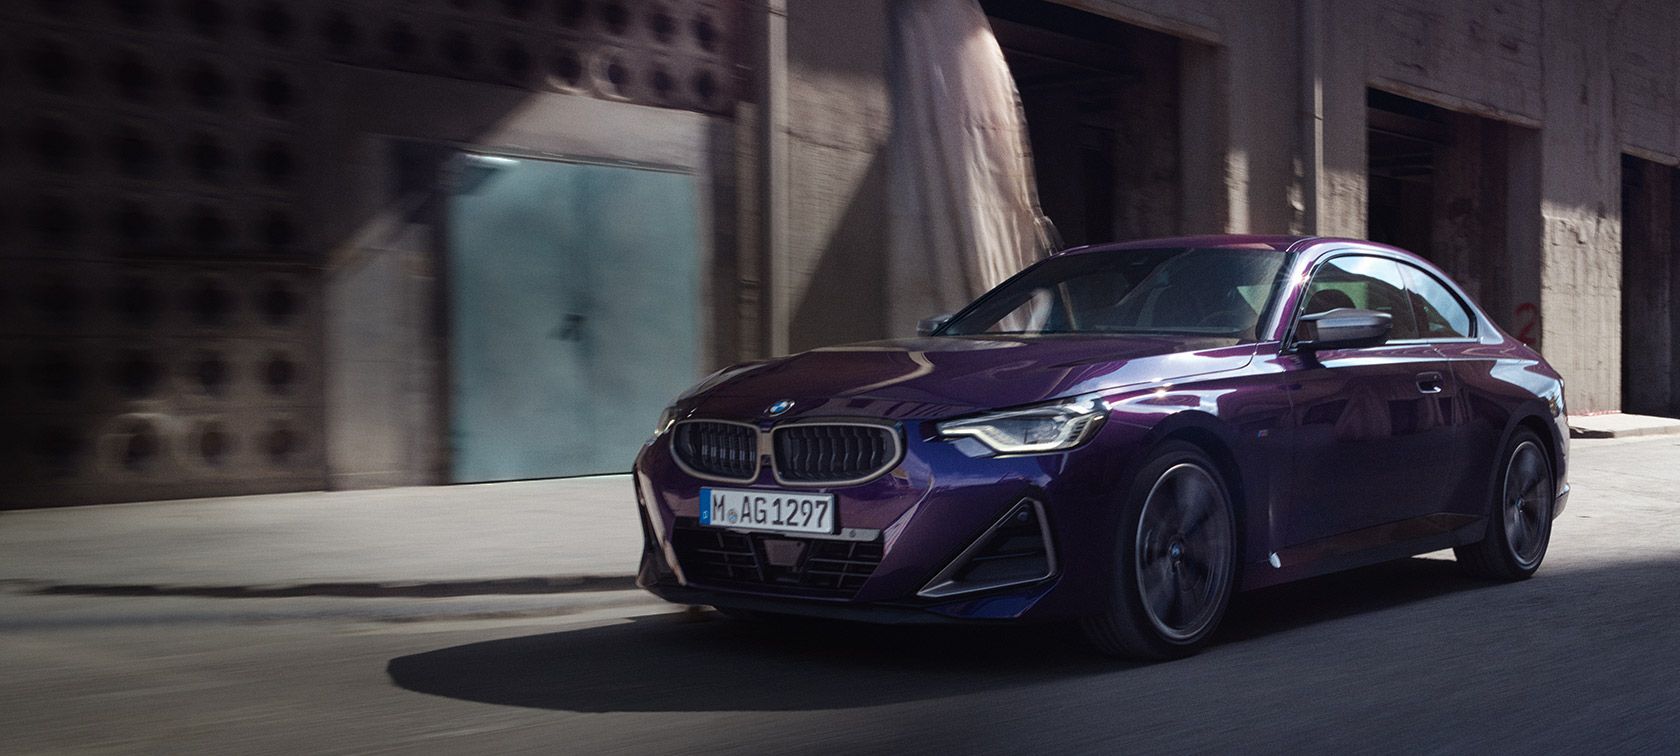 Harga BMW 2 Series Coupe Terbaru, Spesifikasi dan Interior 2022!